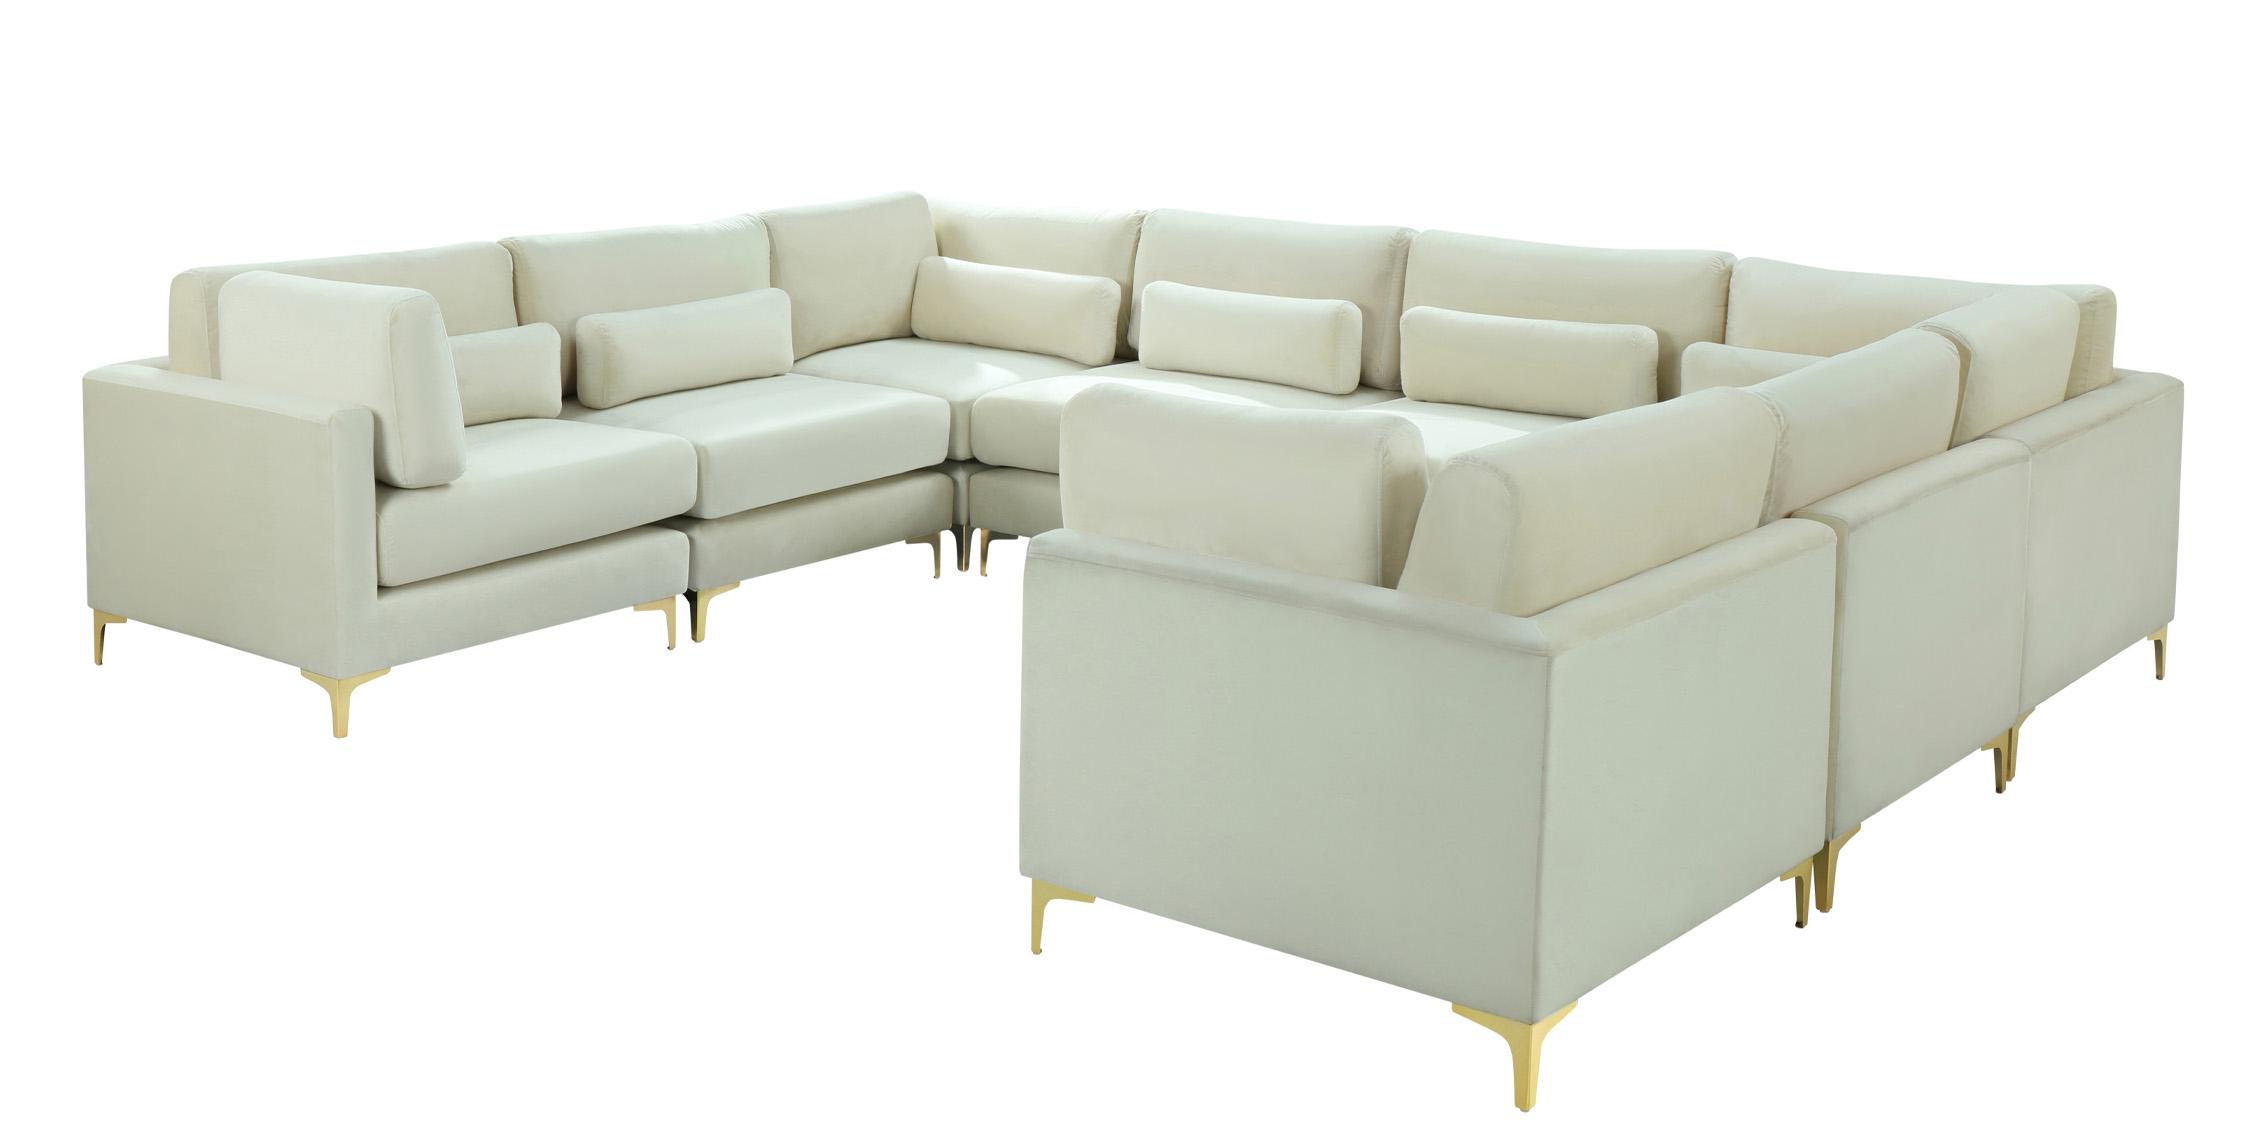 

    
Meridian Furniture JULIA 605Cream-Sec8A Modular Sectional Sofa Cream 605Cream-Sec8A
